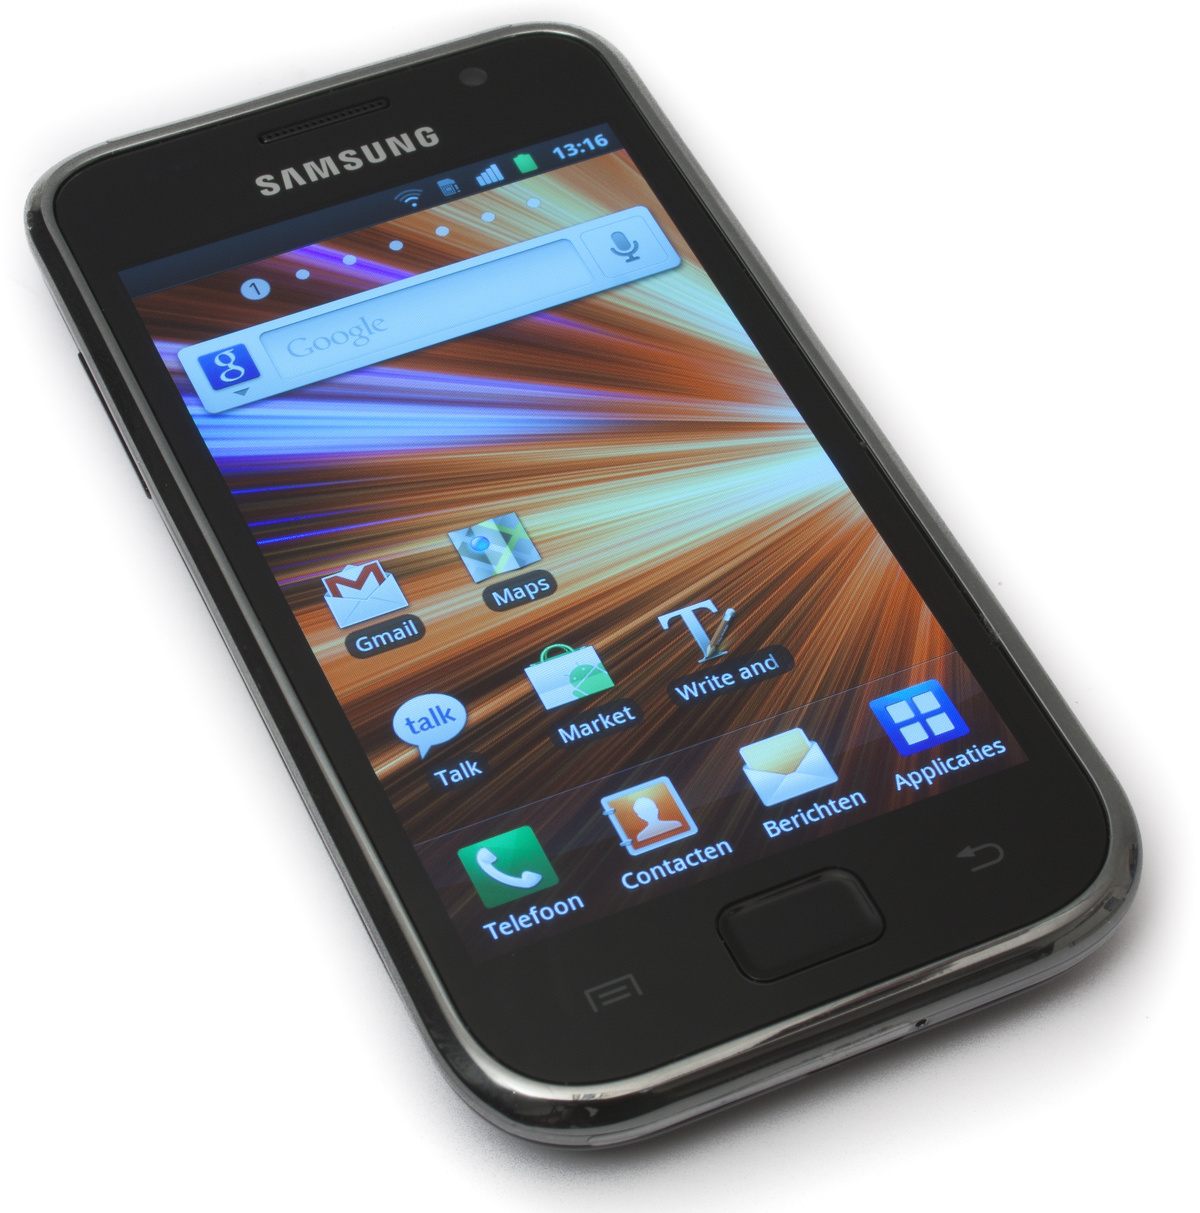 Samsung Galaxy S 21